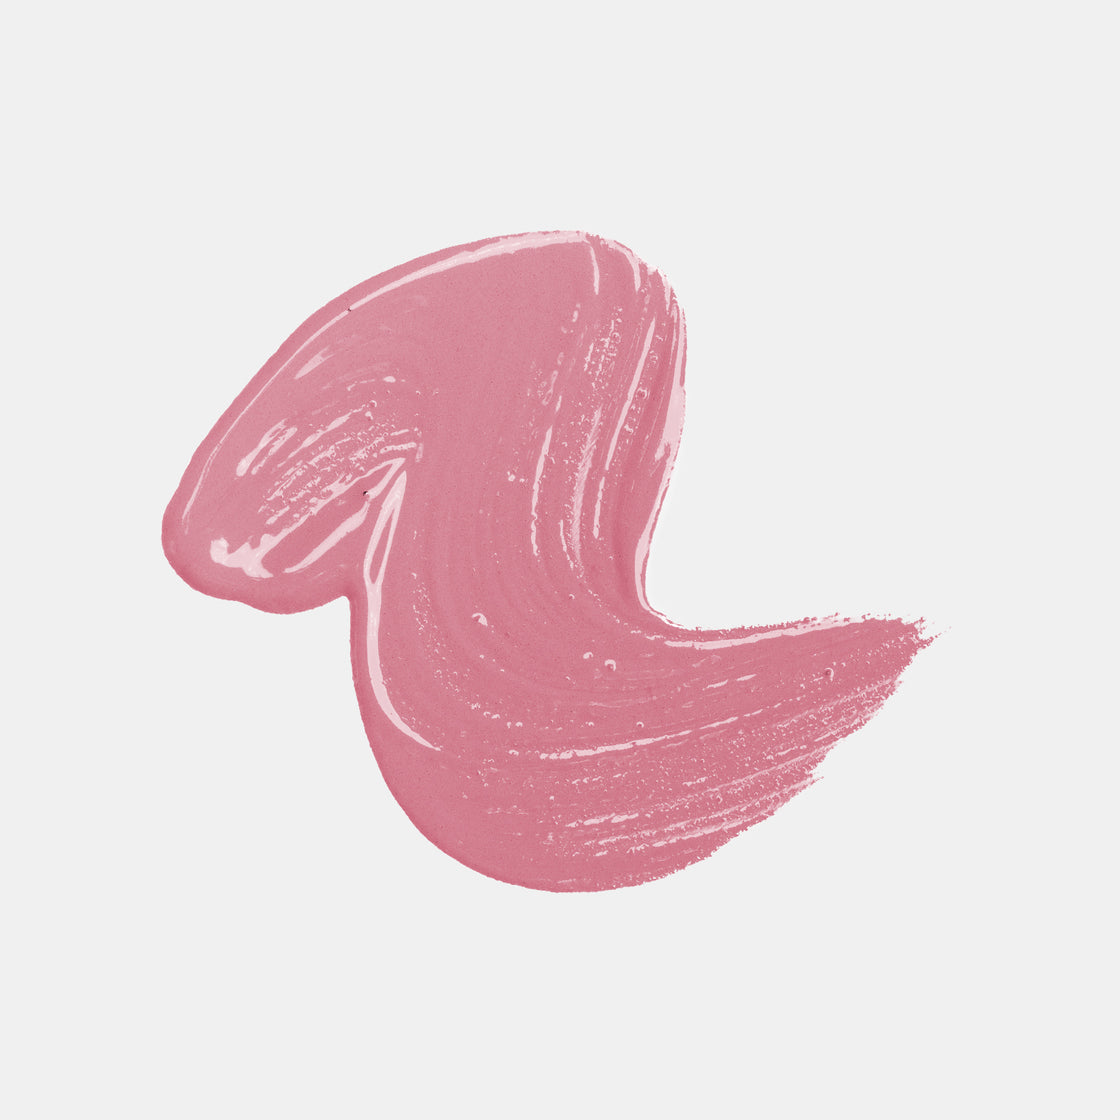 Tease – Matte Liquid Lip Color-Health & Beauty-cruelty free cosmetics-Sunny Leone